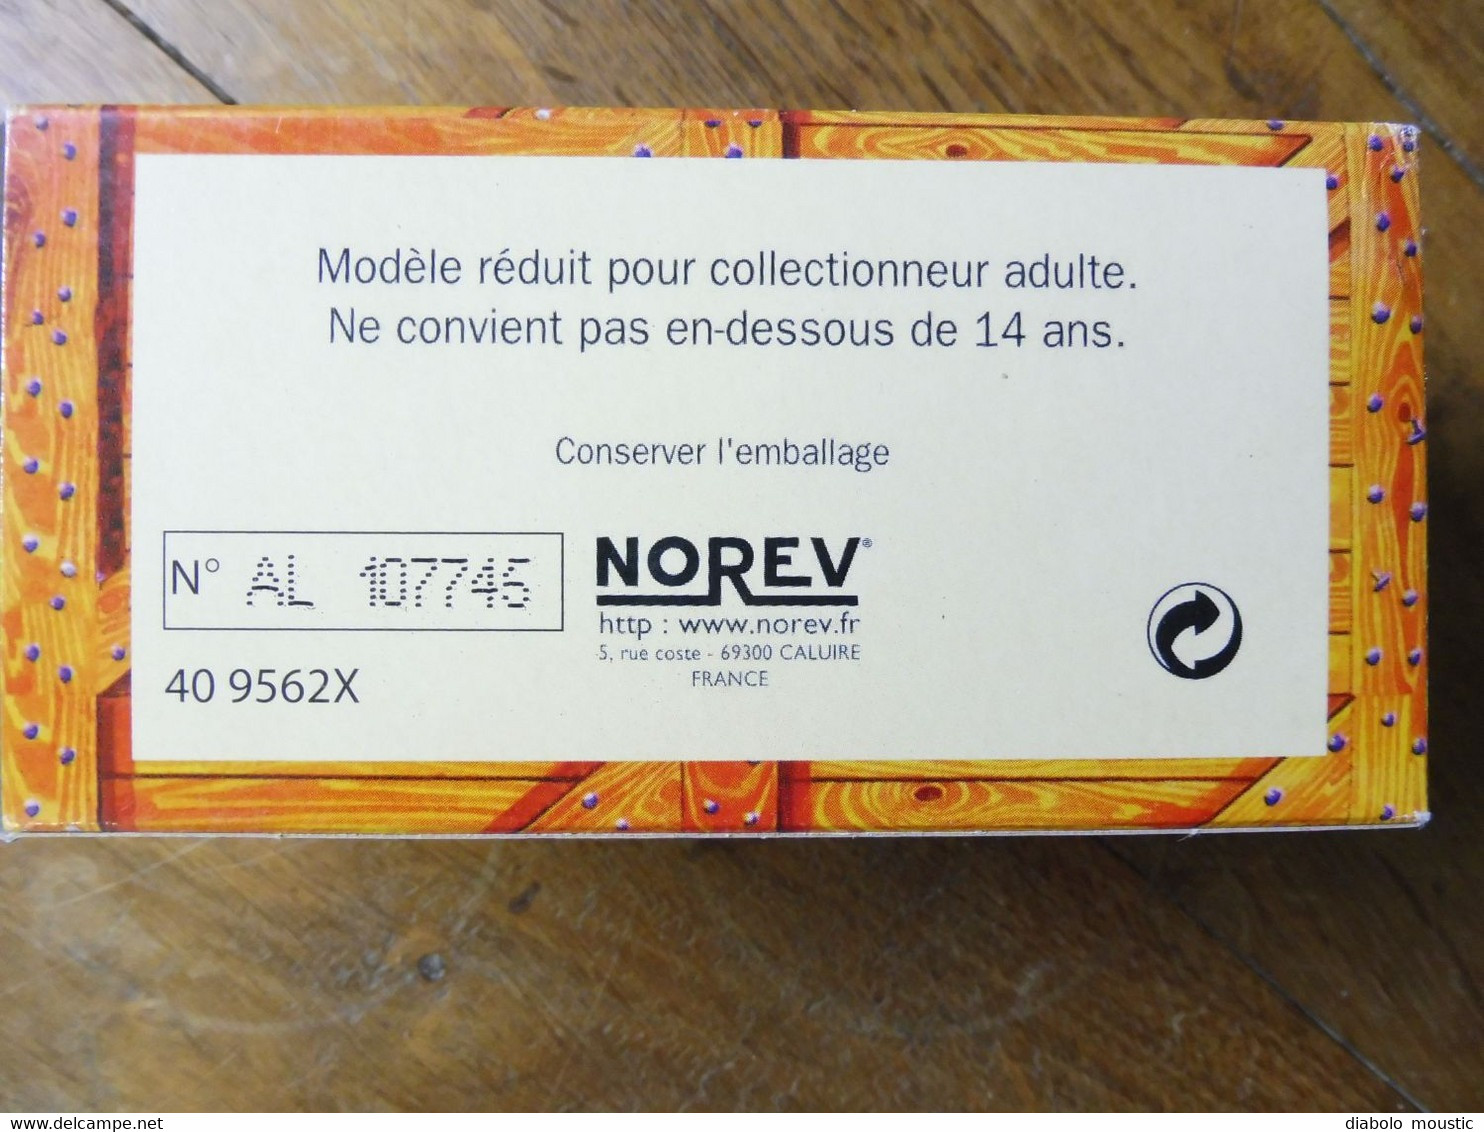 Modèle réduit 1/43e  CITROËN 2CV de La Poste 1952    "NOREV" (état superbe et complet avec son emballage d'origine)